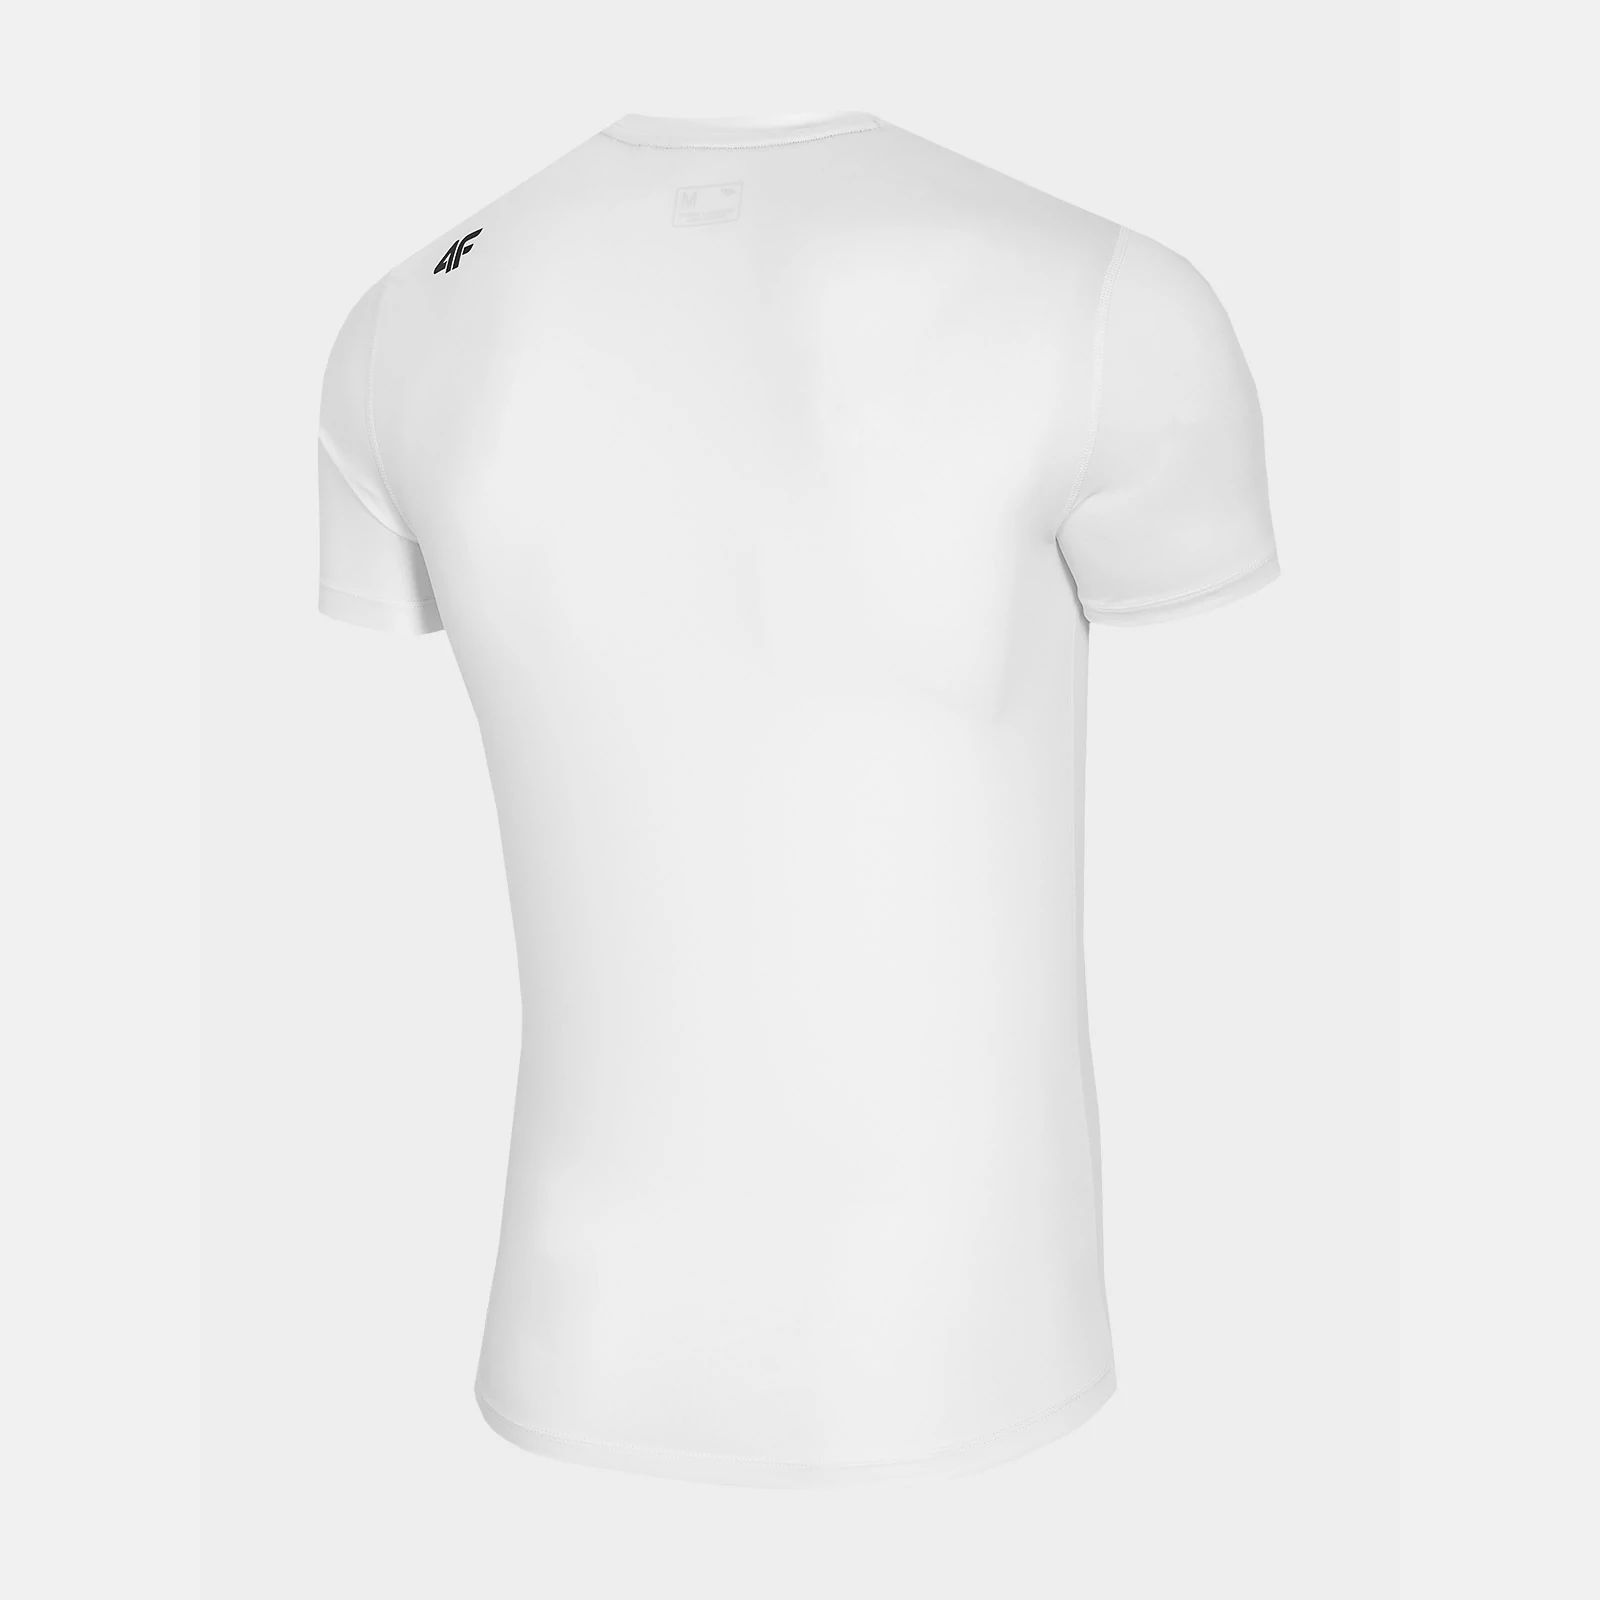 4 F T-shirt TSM002 Da Uomo Manica Corta Palestra Fitness Trazione sportivo in cotone 